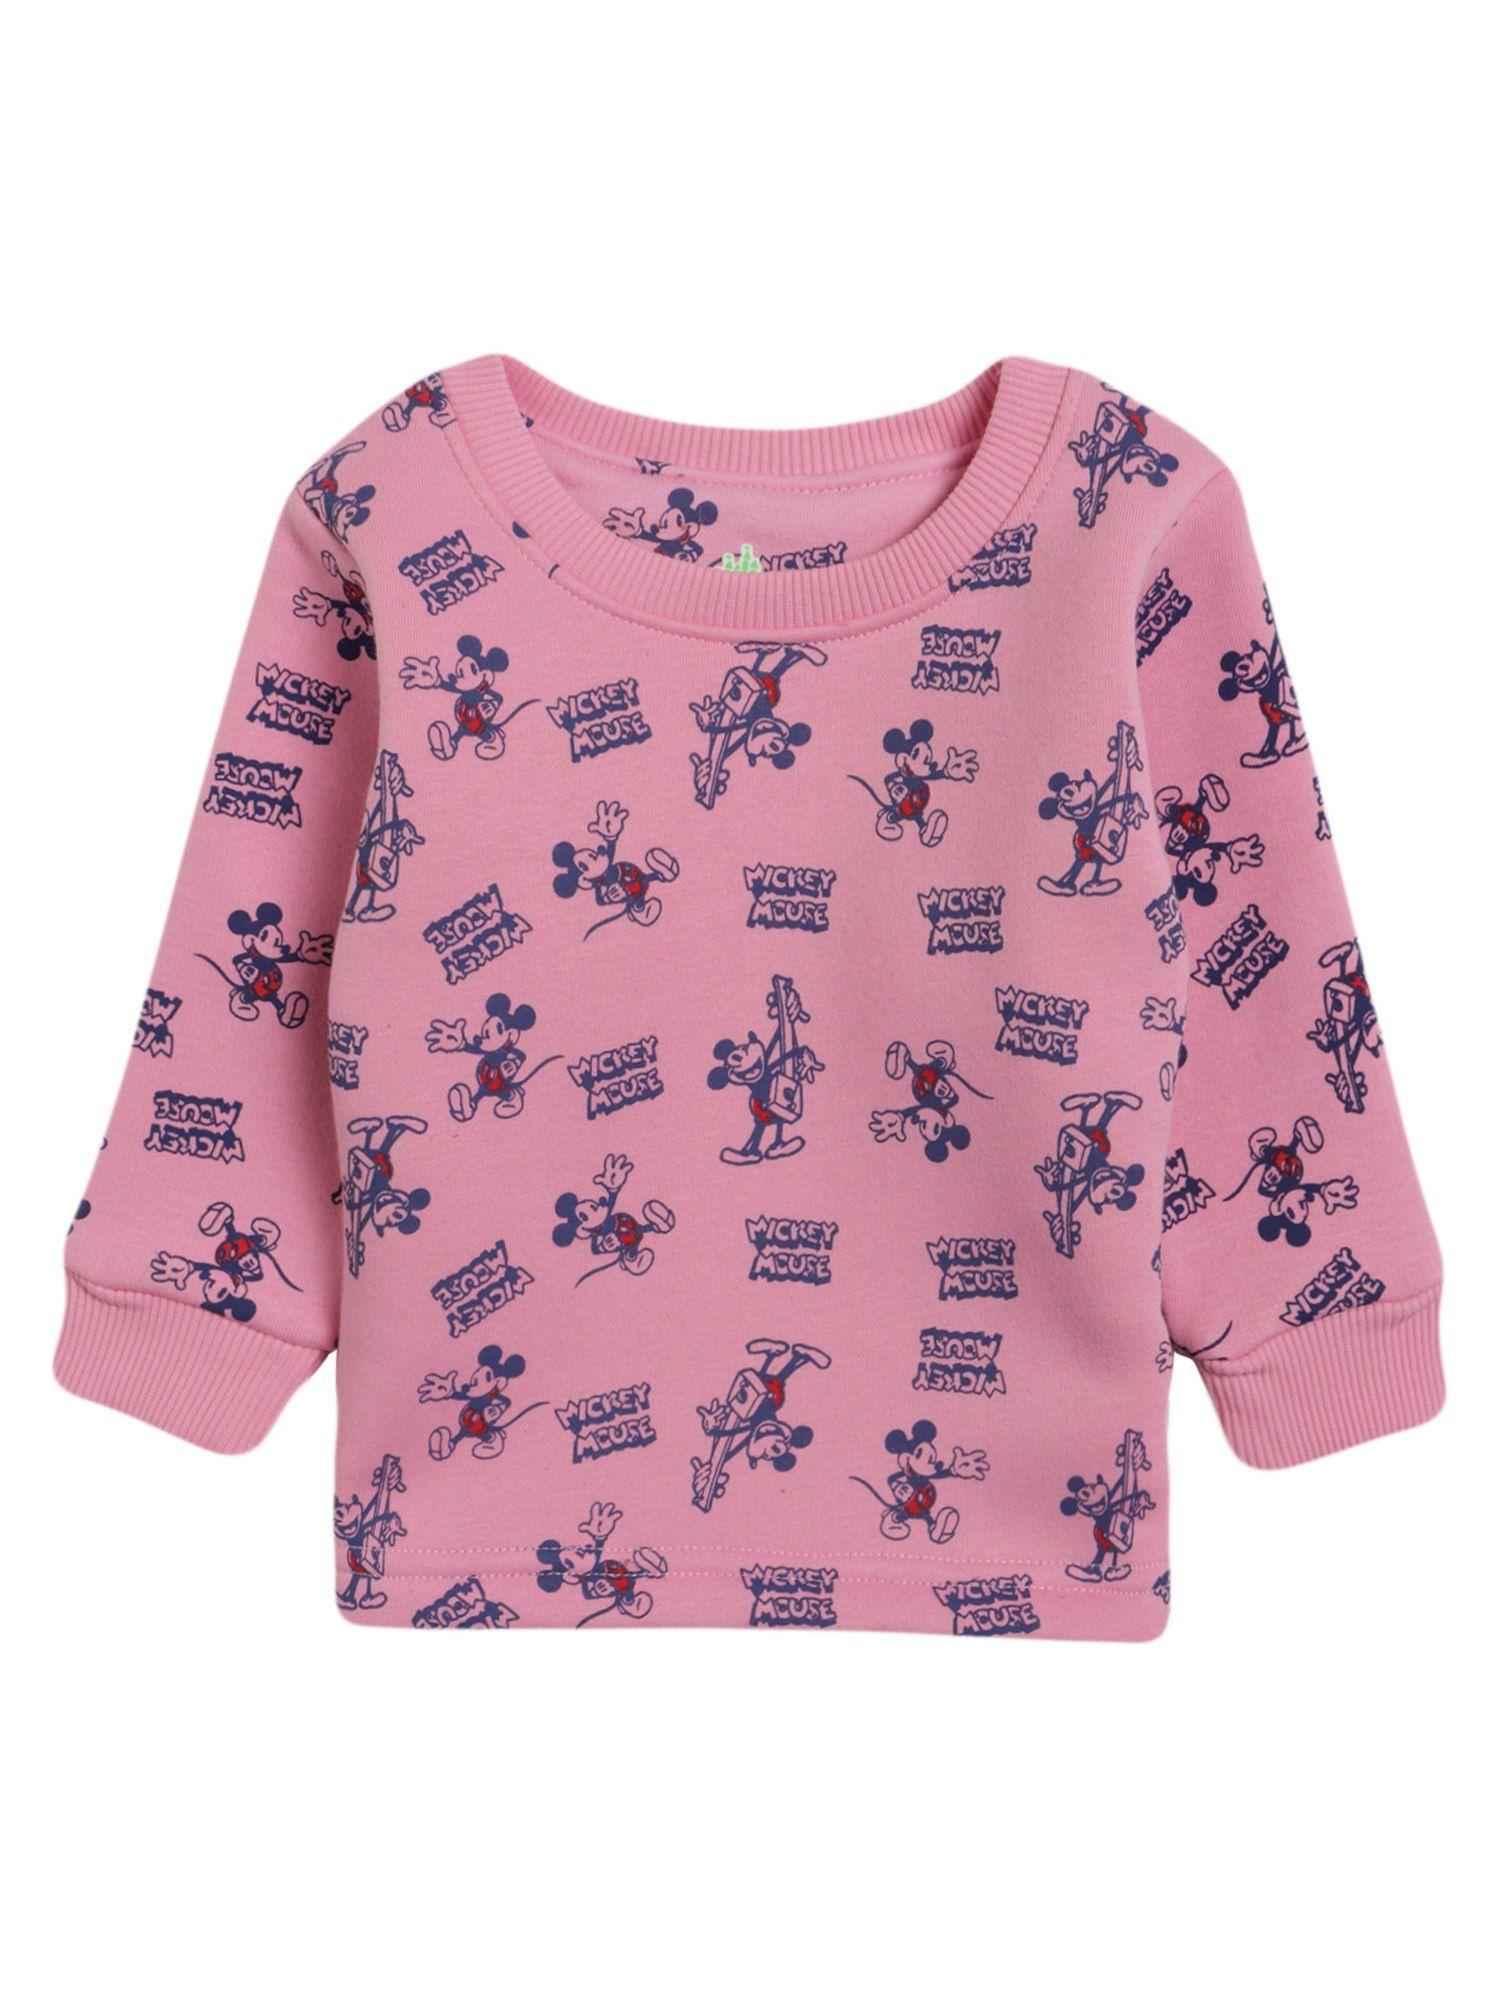 girls-pink-printed-t-shirts